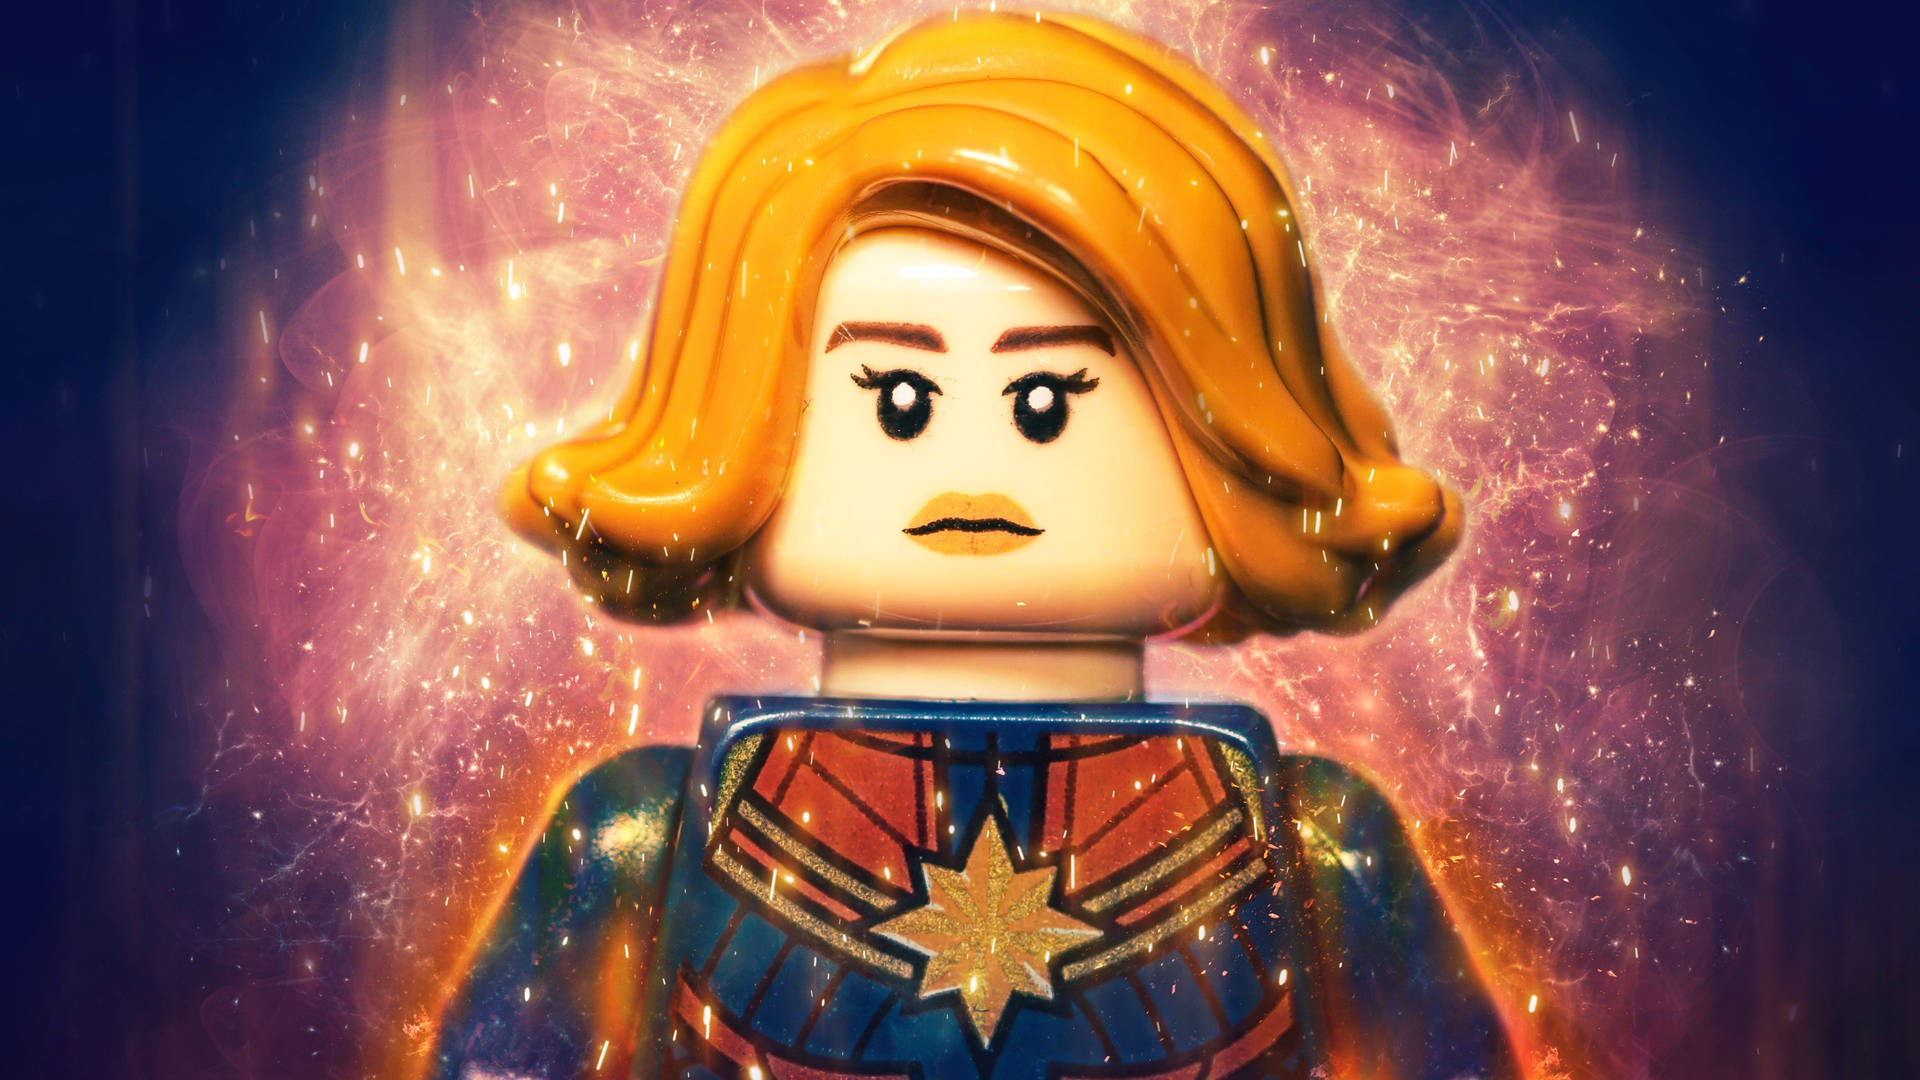 4K Detailed Lego Captain Marvel in Action Wallpaper